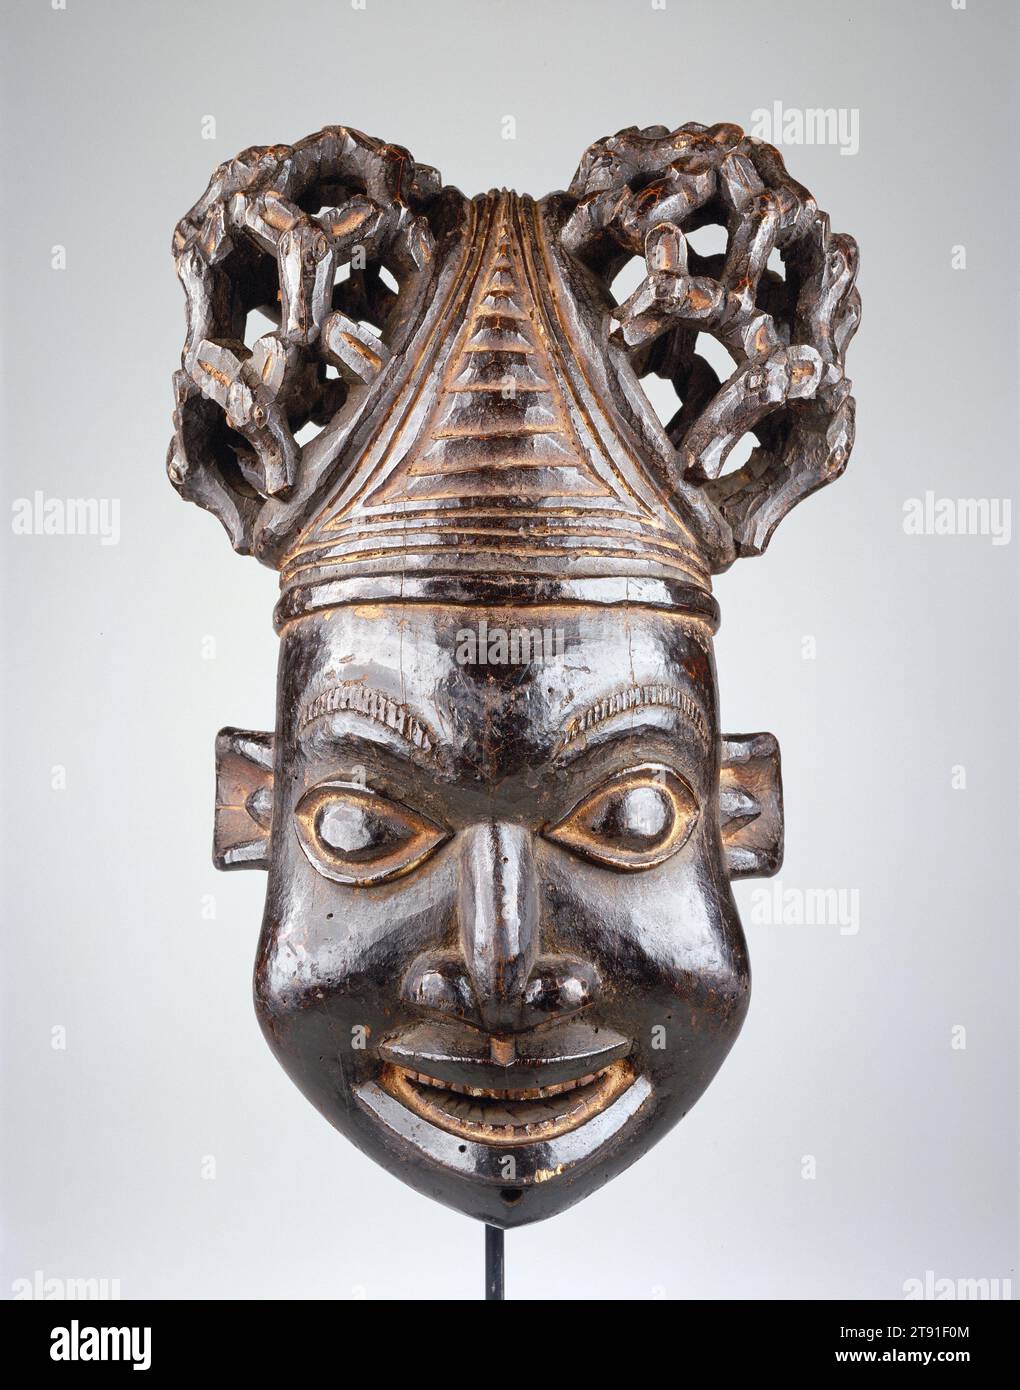 Masque, 20e siècle, 21 x 14 1/4 x 11 1/4 po. (53,3 x 36,2 x 28,6 cm), Bois, Cameroun, 20e siècle, ce masque casque fait partie d'un groupe de masques de lignée, ou d'une famille de masques qui performent ensemble. Il représente le visage humain masculin et symbolise un ancêtre royal ou clanique. Les masques comme ceux-ci se produisent généralement lors de funérailles ou de célébrations commémoratives. Ce masque se porte sur le dessus de la tête, tandis qu'un voile en maille dissimule le visage de l'interprète Banque D'Images